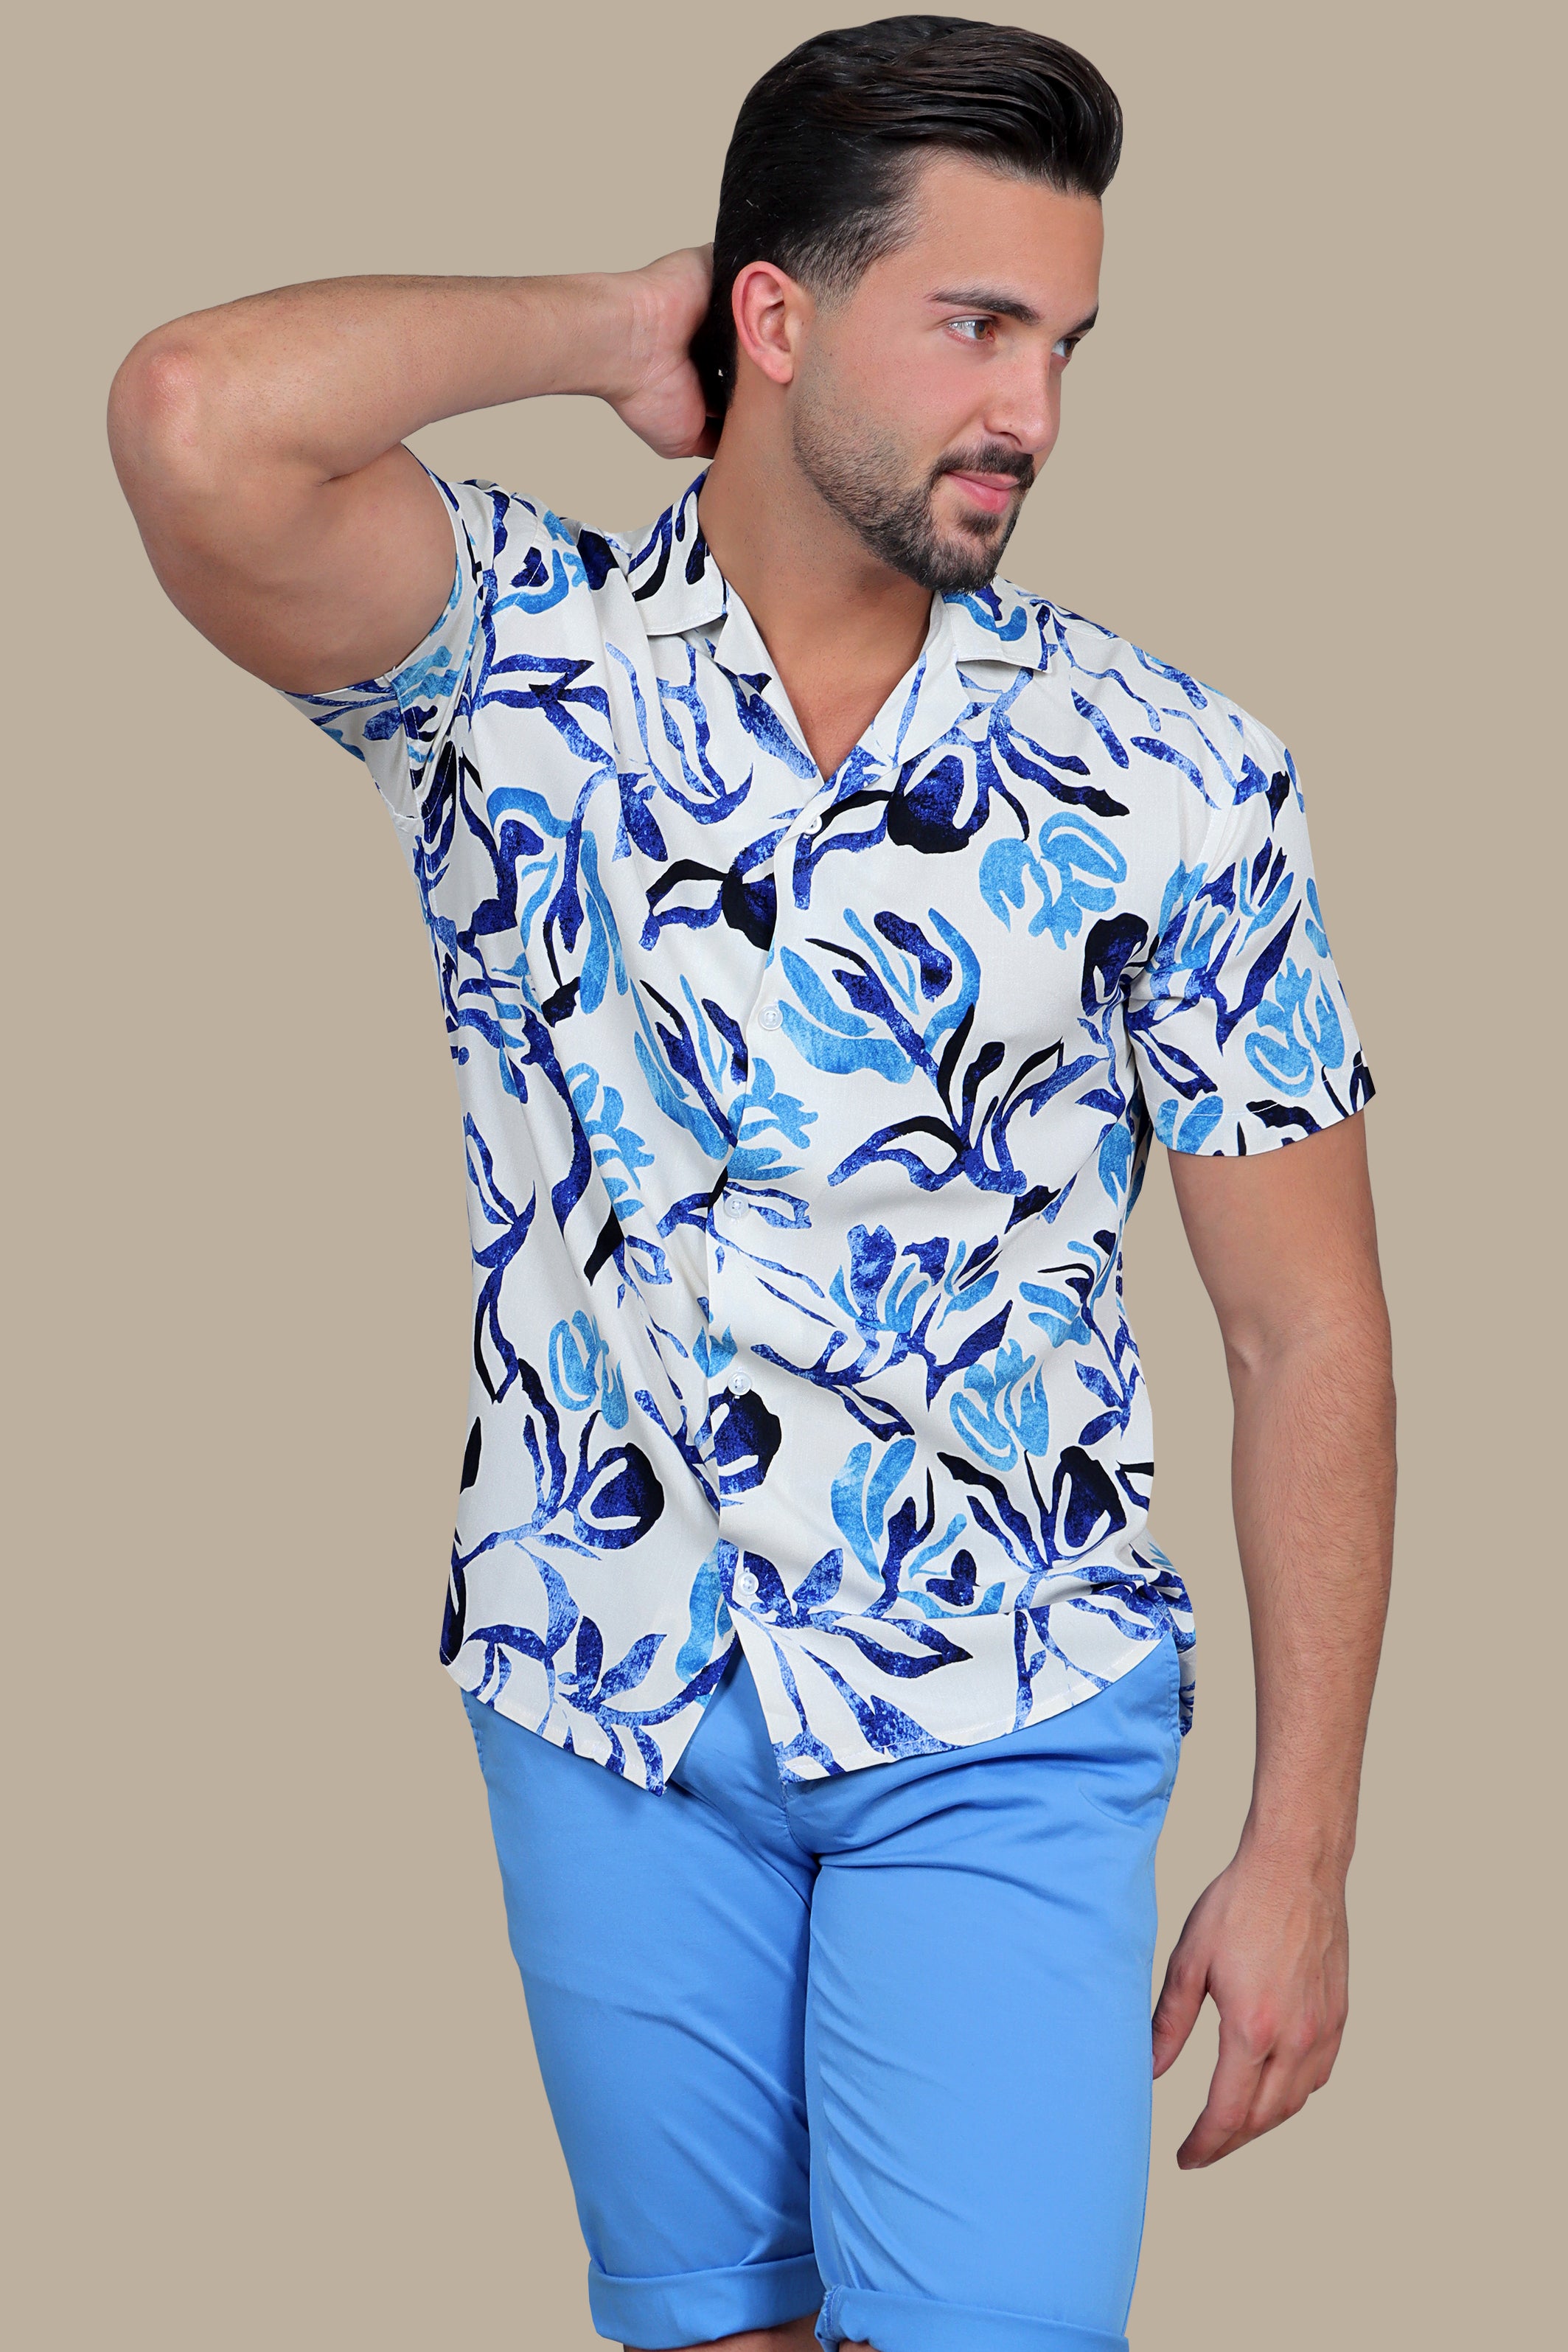 Ocean Breeze Bloom: Blue Abstract Flower Print Hawaiian Shirt